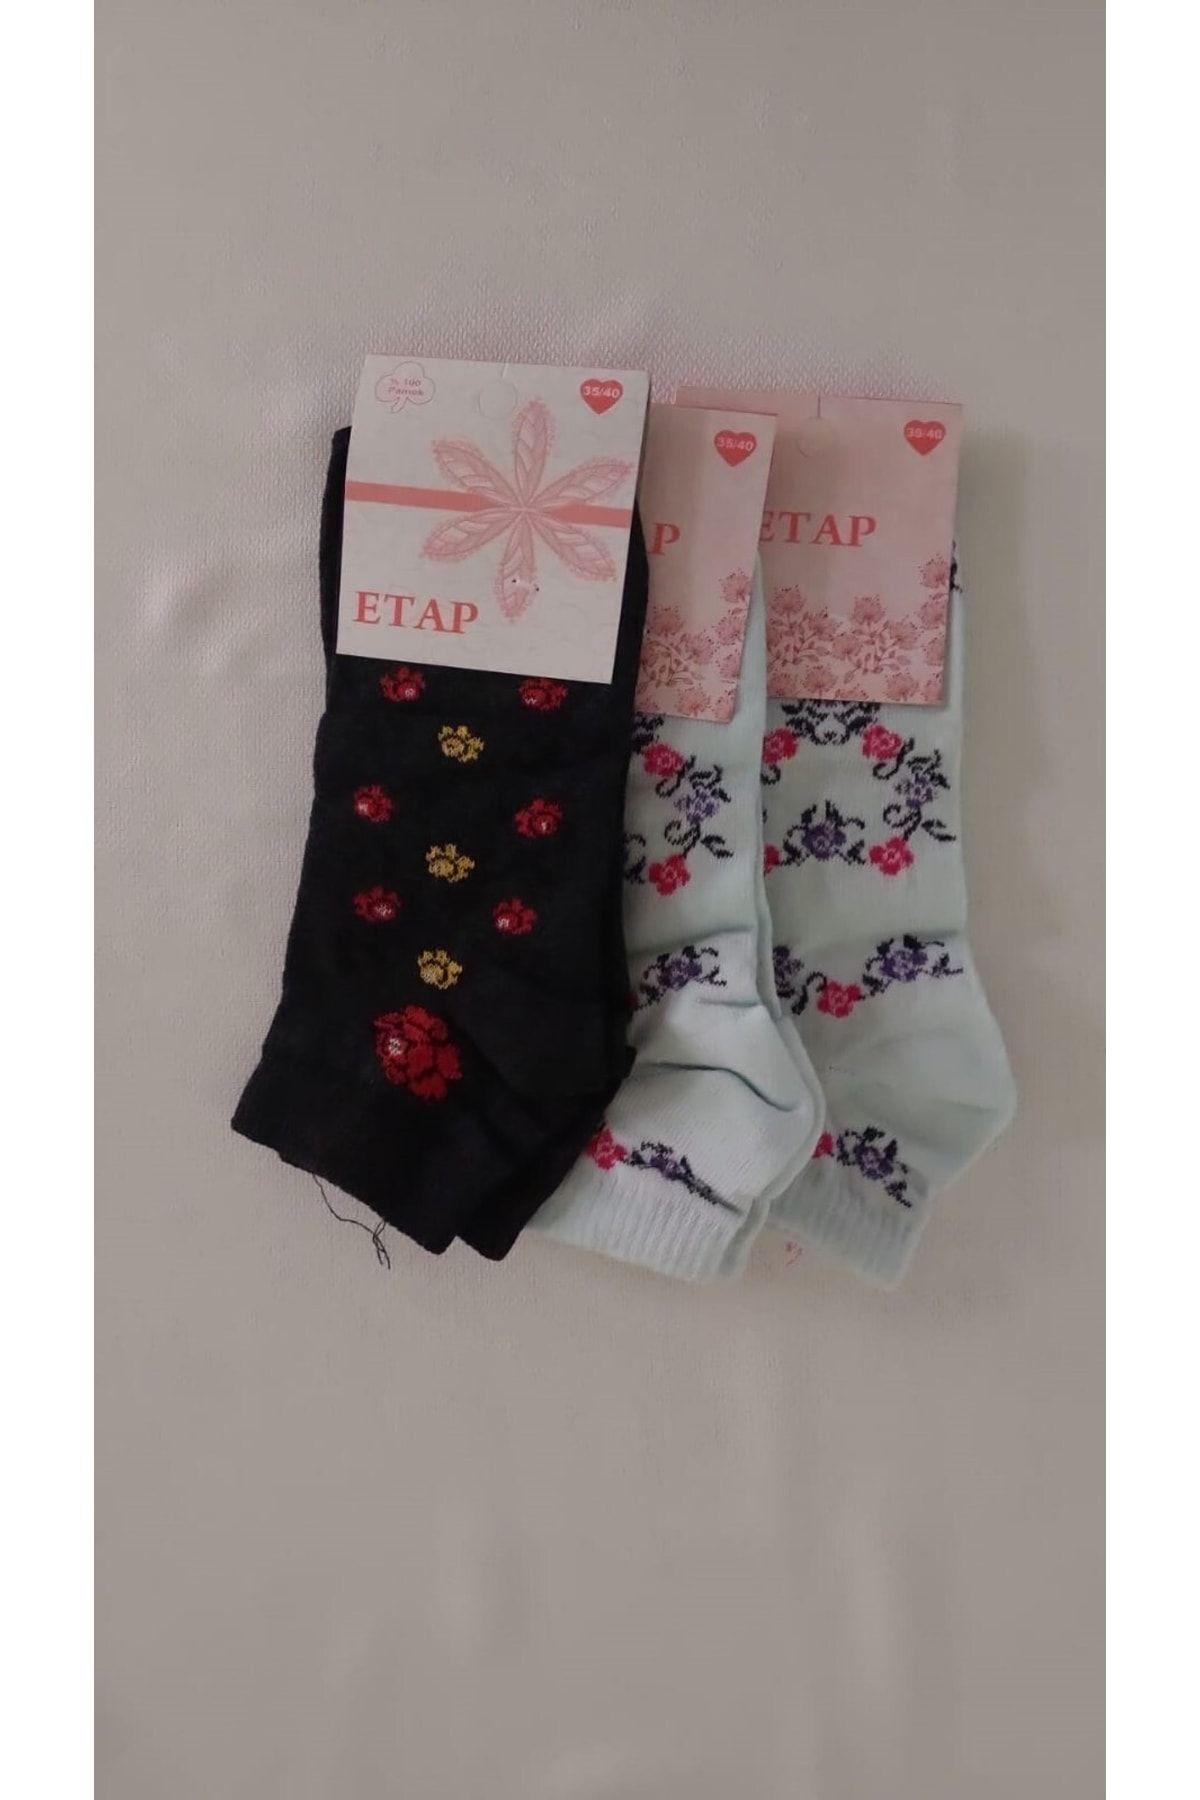 Etap Kadın Patik Çorap 35-40 12 Adet Karışık Renkler